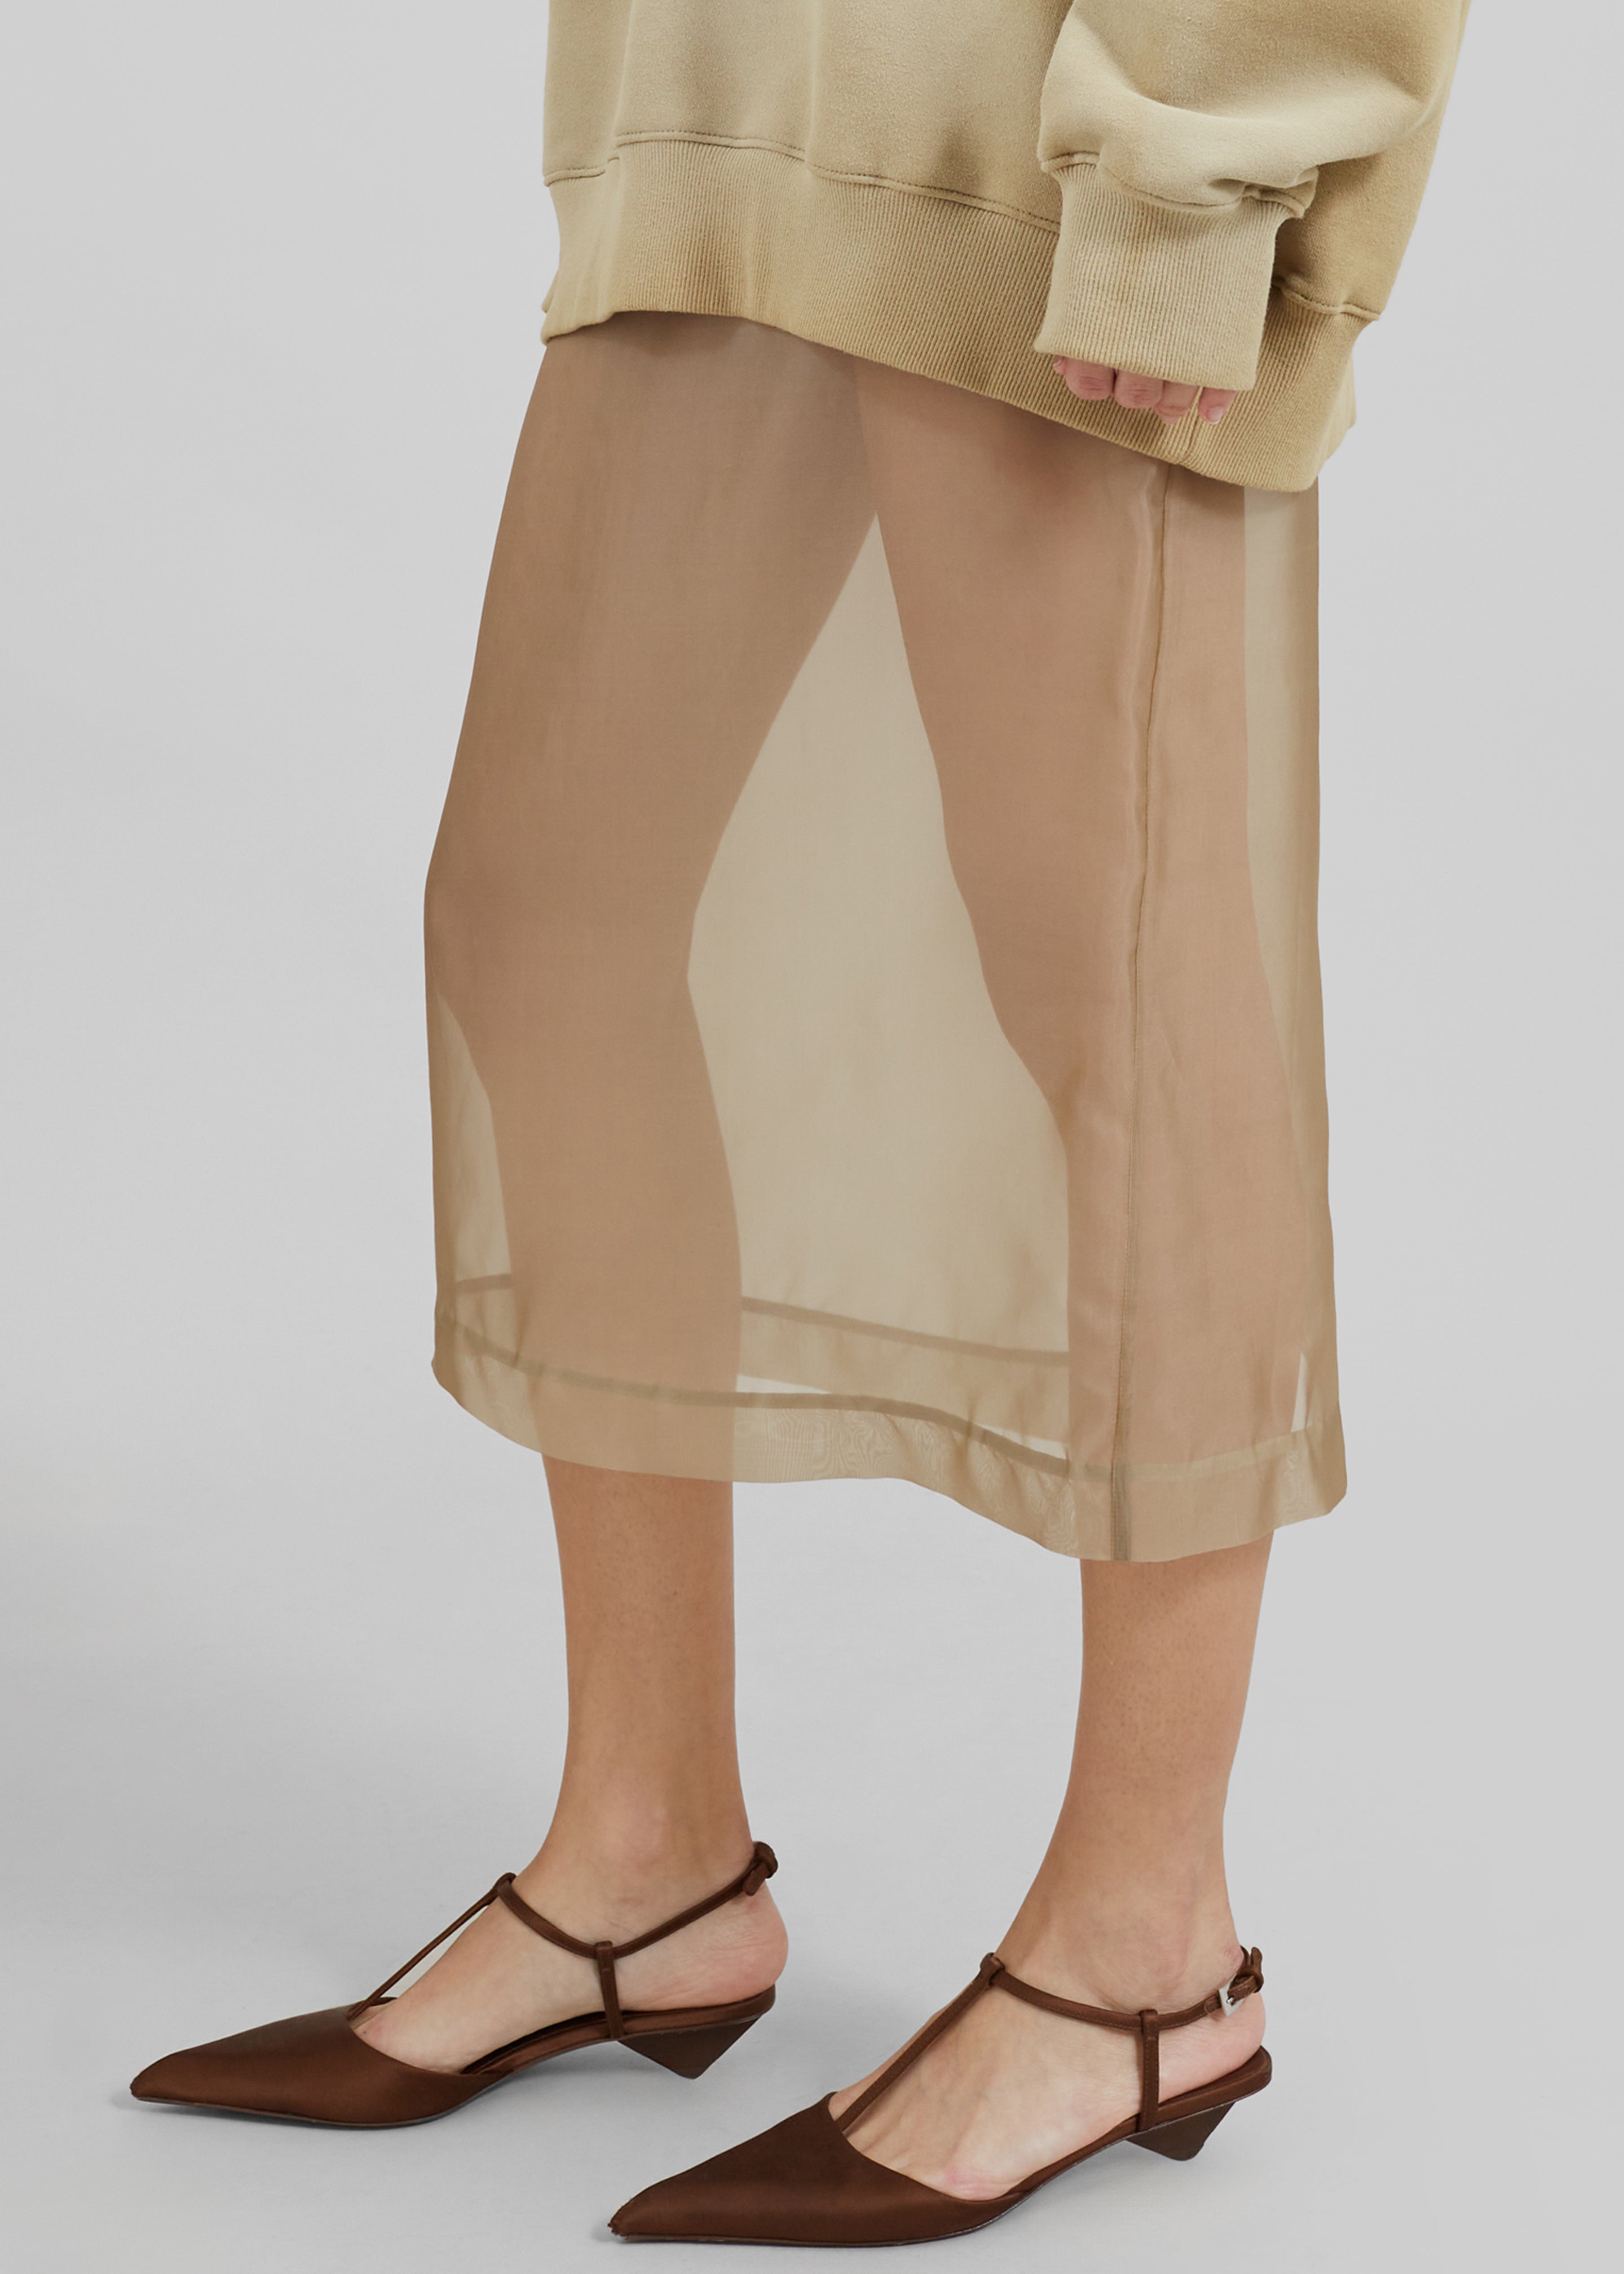 Peri Sheer Midi Skirt - Desert Sand - 5